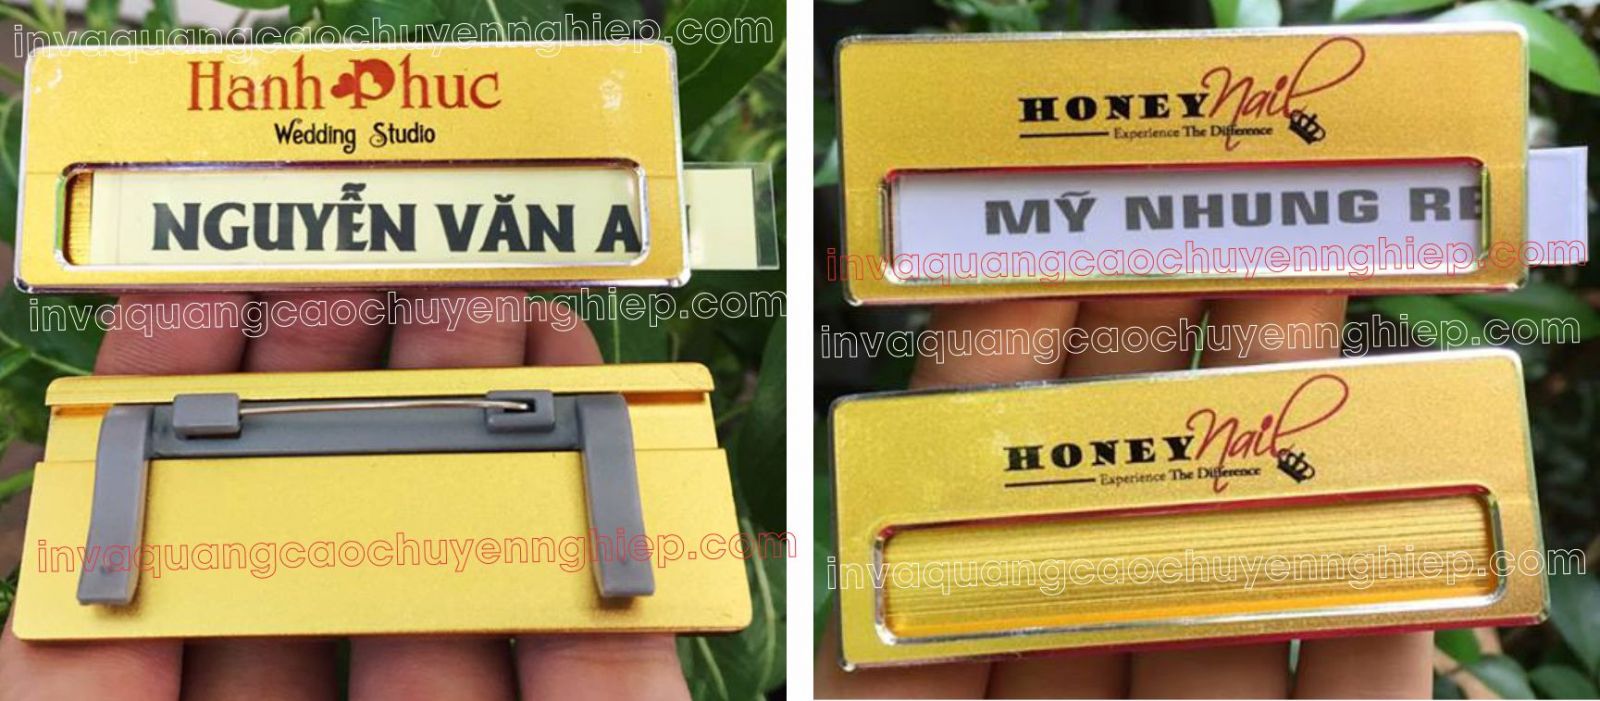 Mẫu thẻ nhân viên đổi tên (thẻ thay tên nhân viên) hoàn toàn bằng kim loại với 2 màu vàng và bạc hiện đang là loại thẻ được ưa chuộng nhất